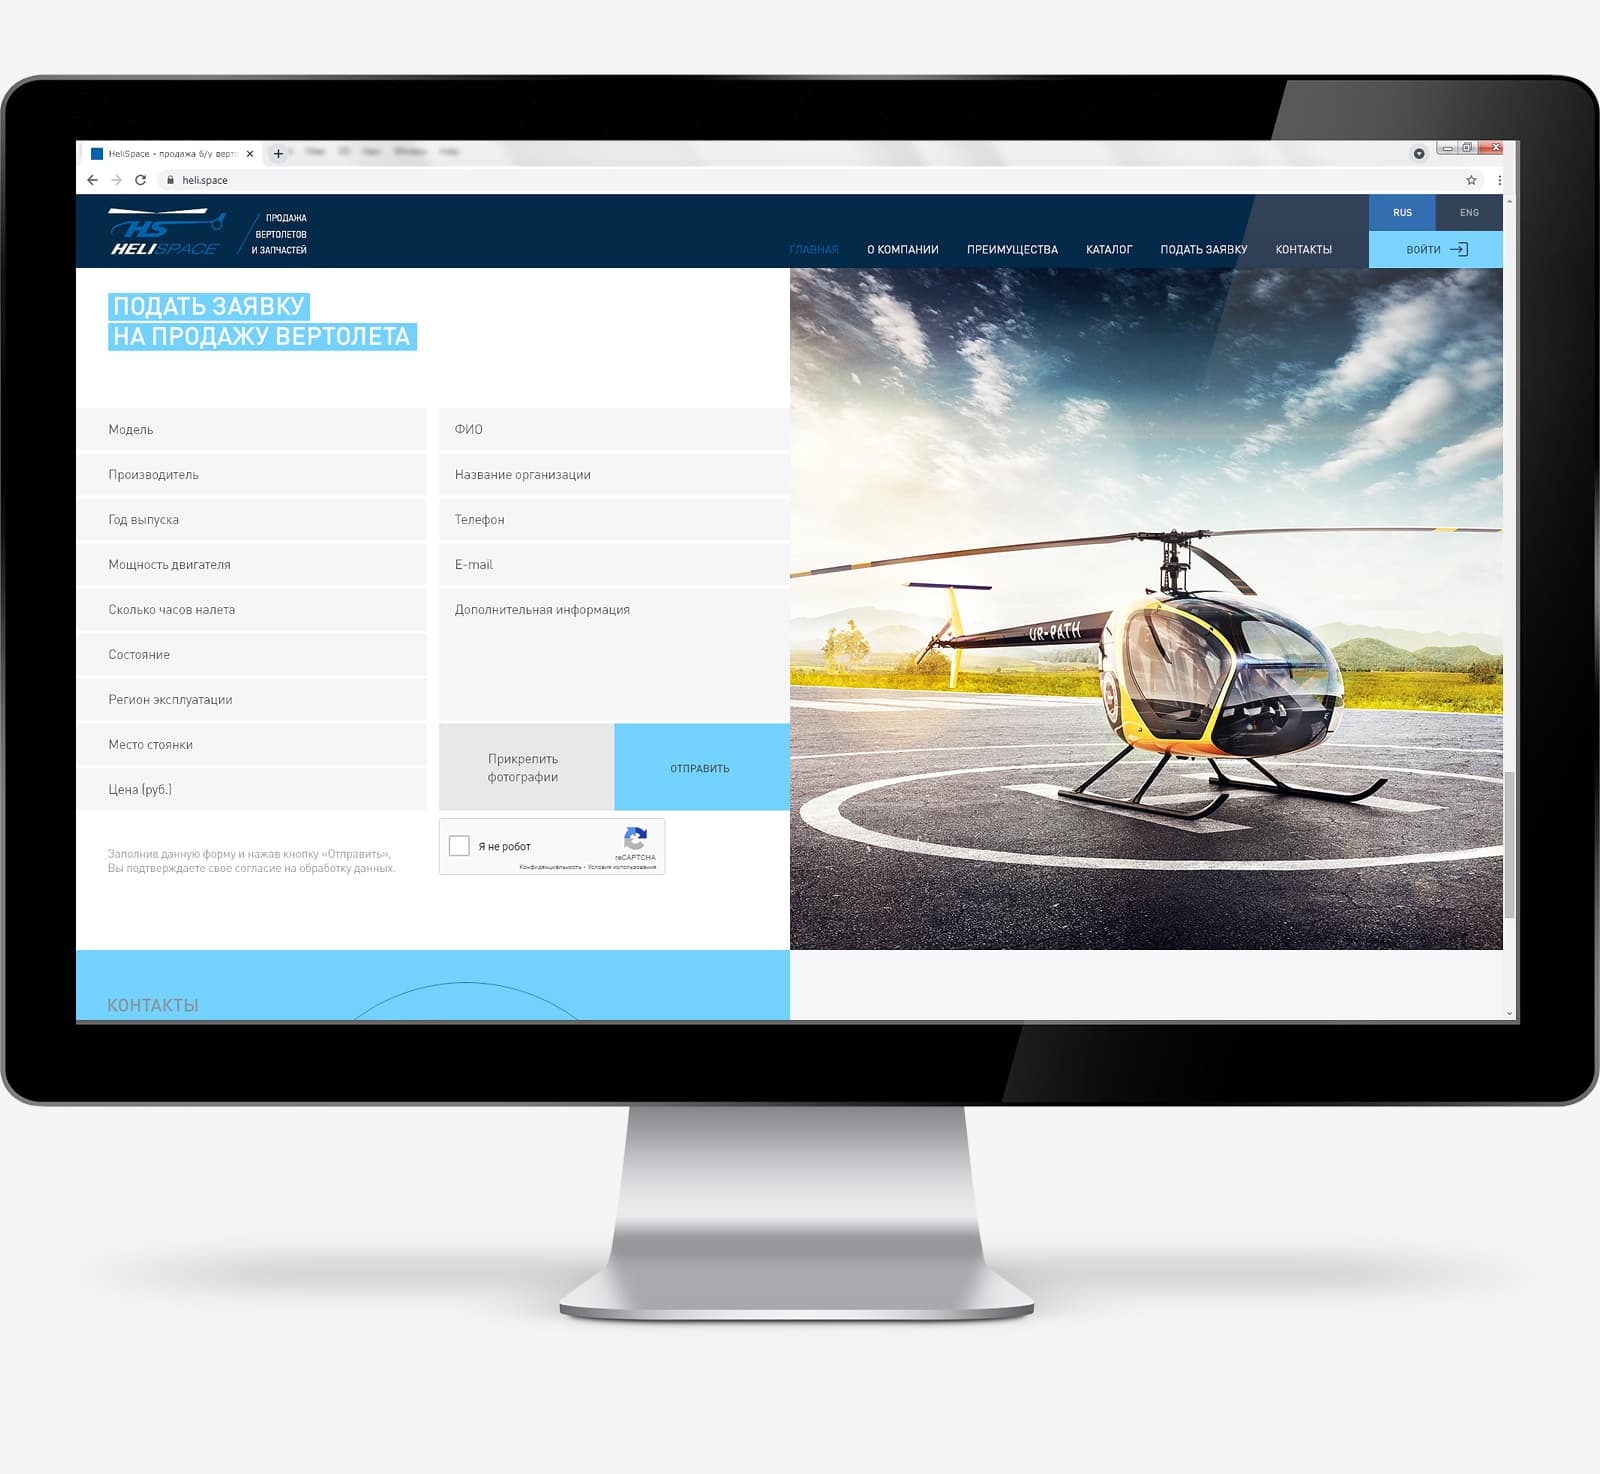 Дизайн сайта «Продажа и покупка б/у вертолетов» для компании Heli Space